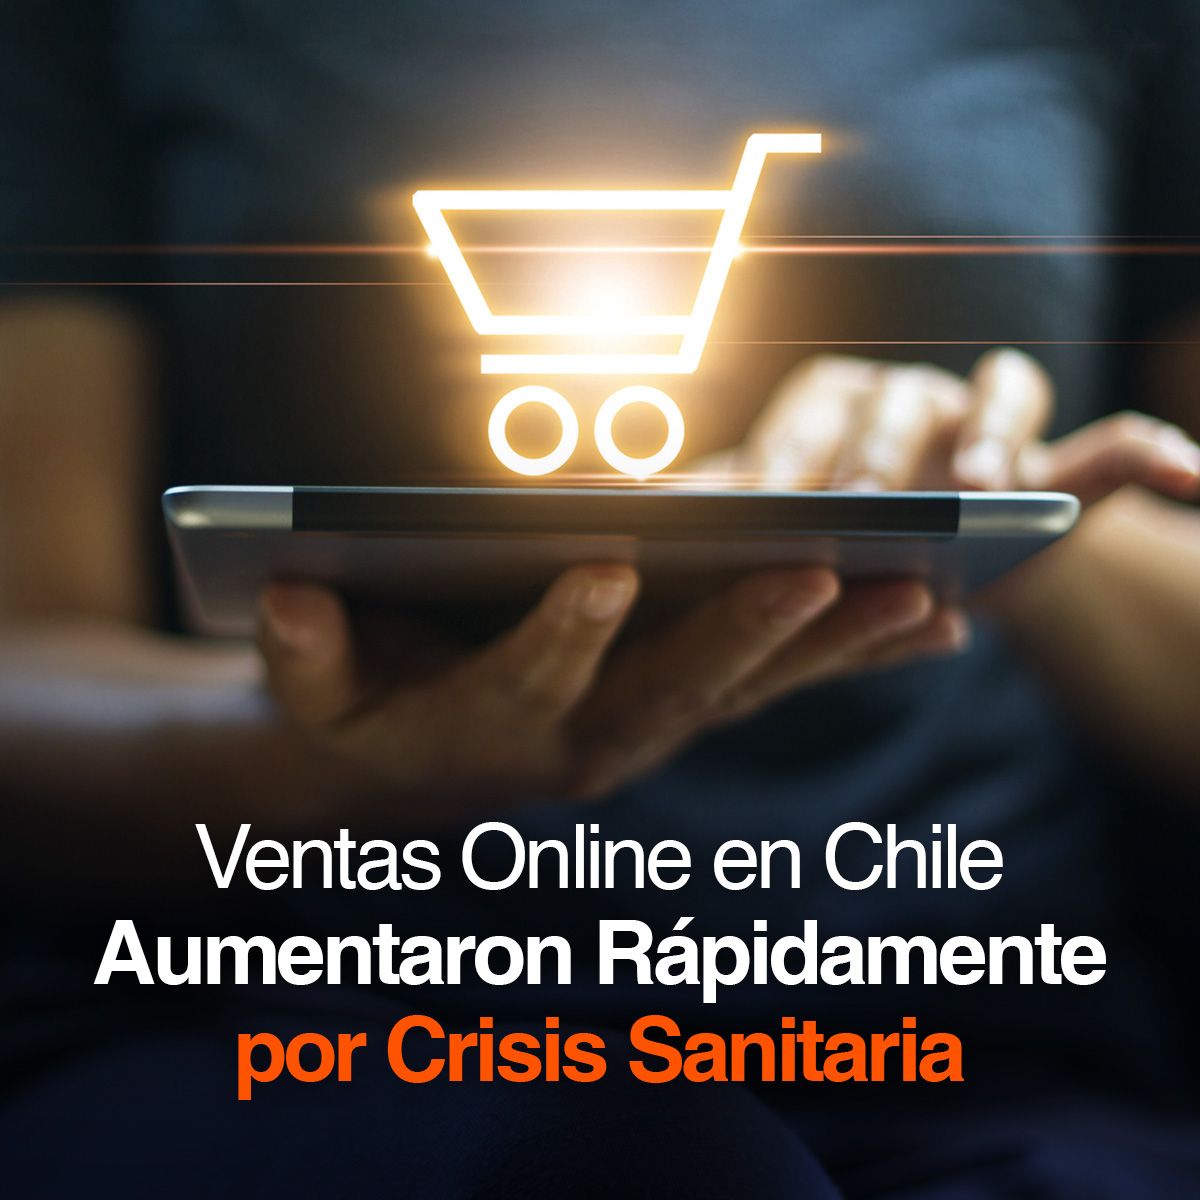 Ventas Online en Chile Aumentaron Rápidamente por Crisis Sanitaria